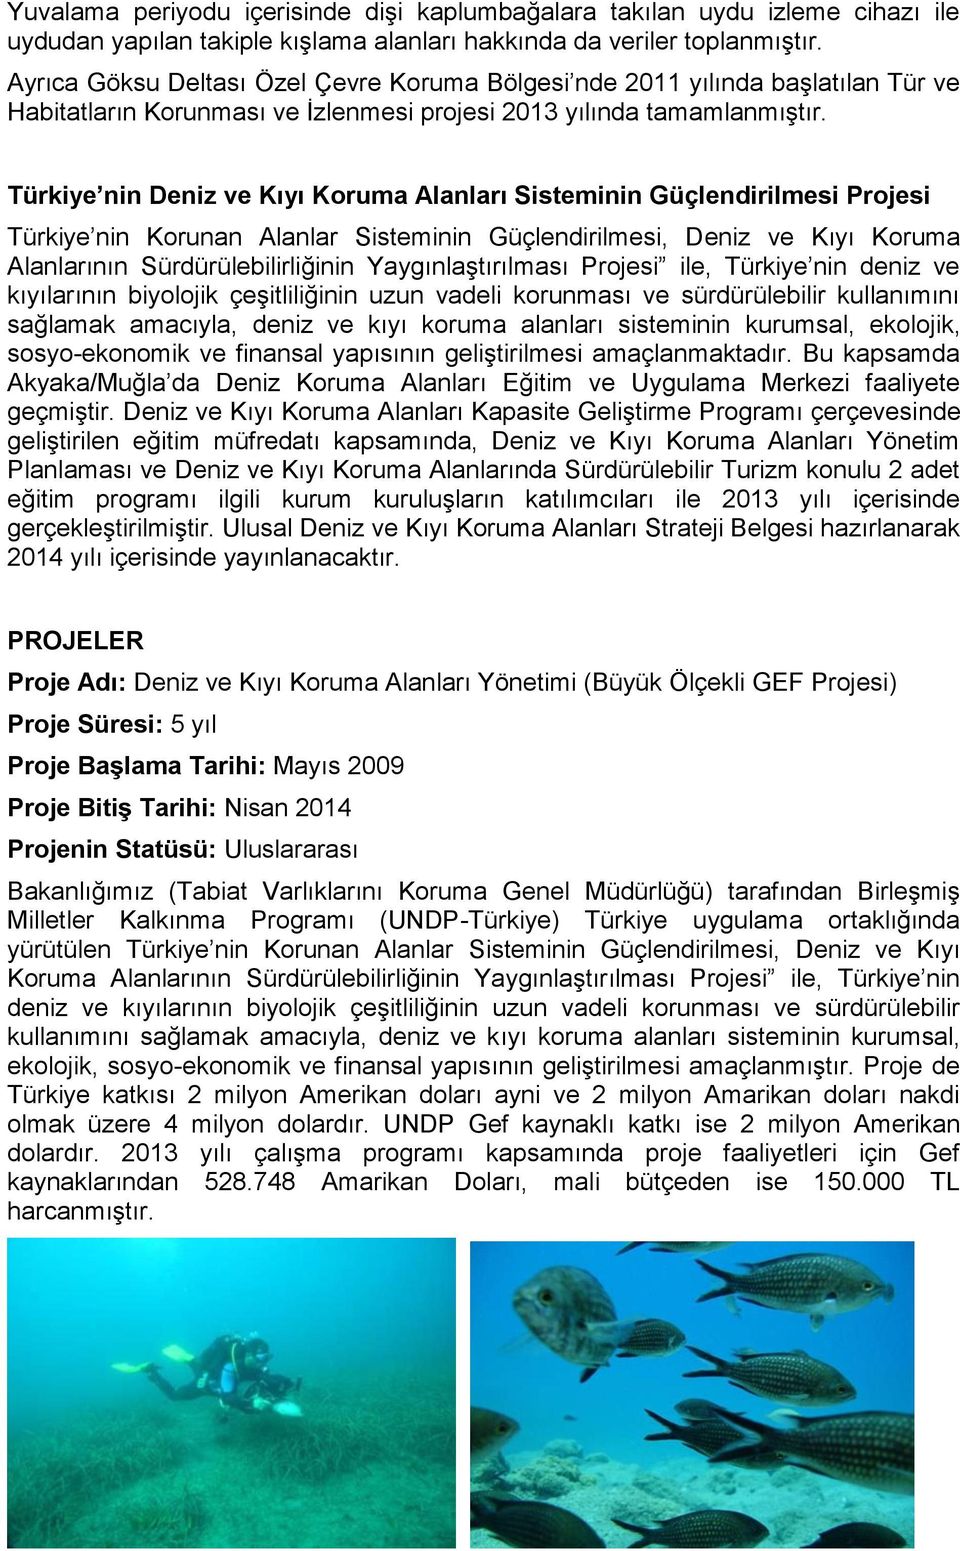 Türkiye nin Deniz ve Kıyı Koruma Alanları Sisteminin Güçlendirilmesi Projesi Türkiye nin Korunan Alanlar Sisteminin Güçlendirilmesi, Deniz ve Kıyı Koruma Alanlarının Sürdürülebilirliğinin